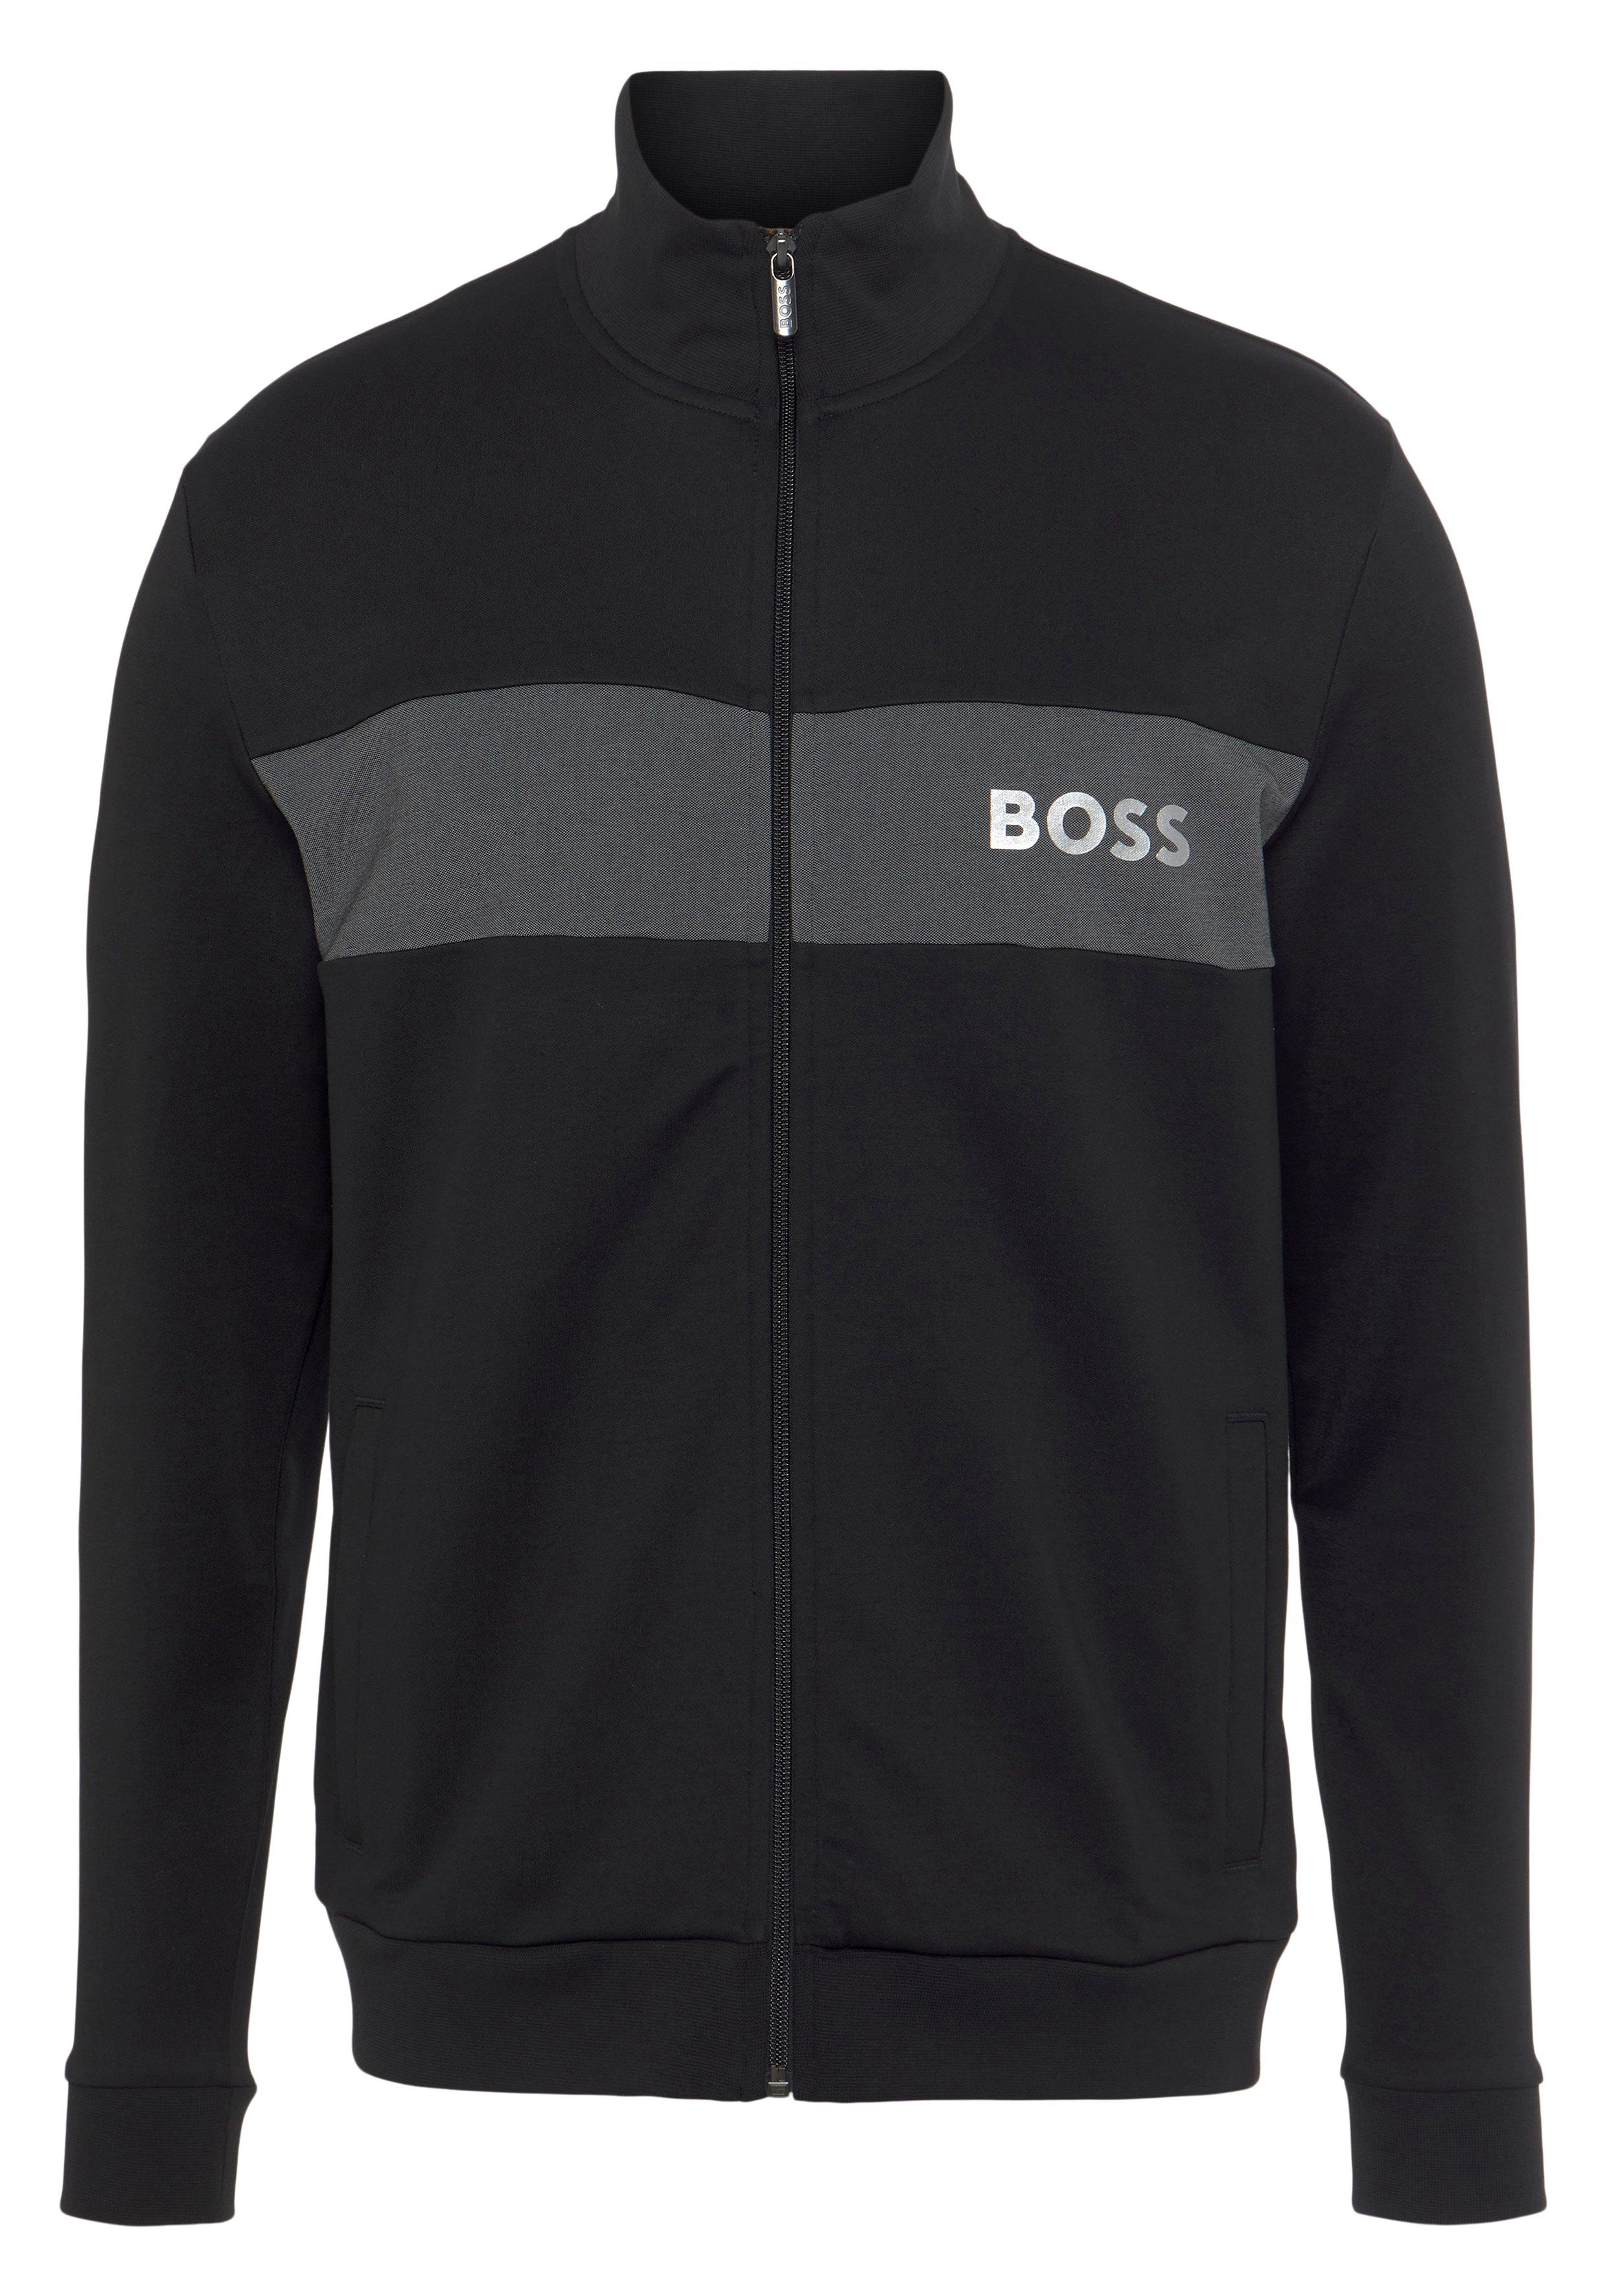 BOSS Sweatjacke Tracksuit Jacket mit Stehkragen Black